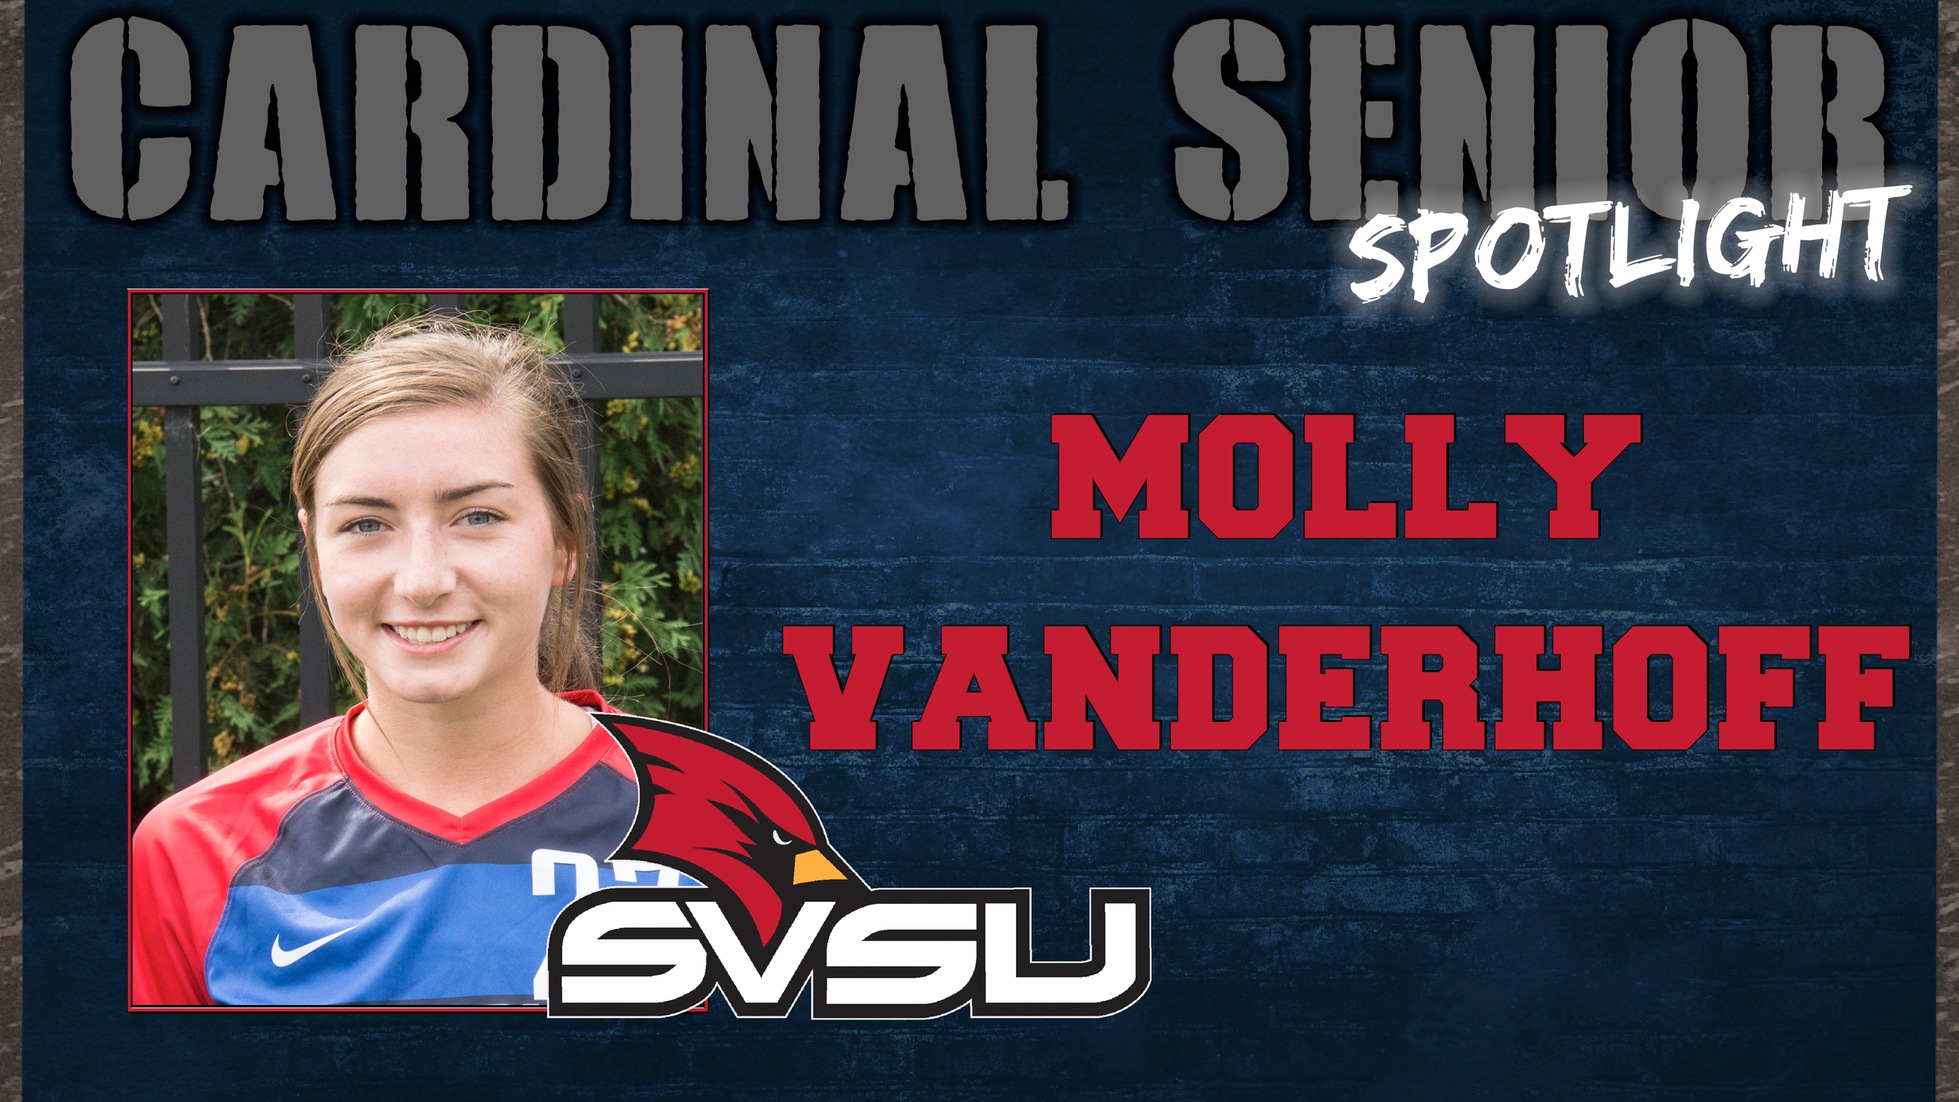 SVSU Cardinal Senior Spotlight - Molly Vanderhoff